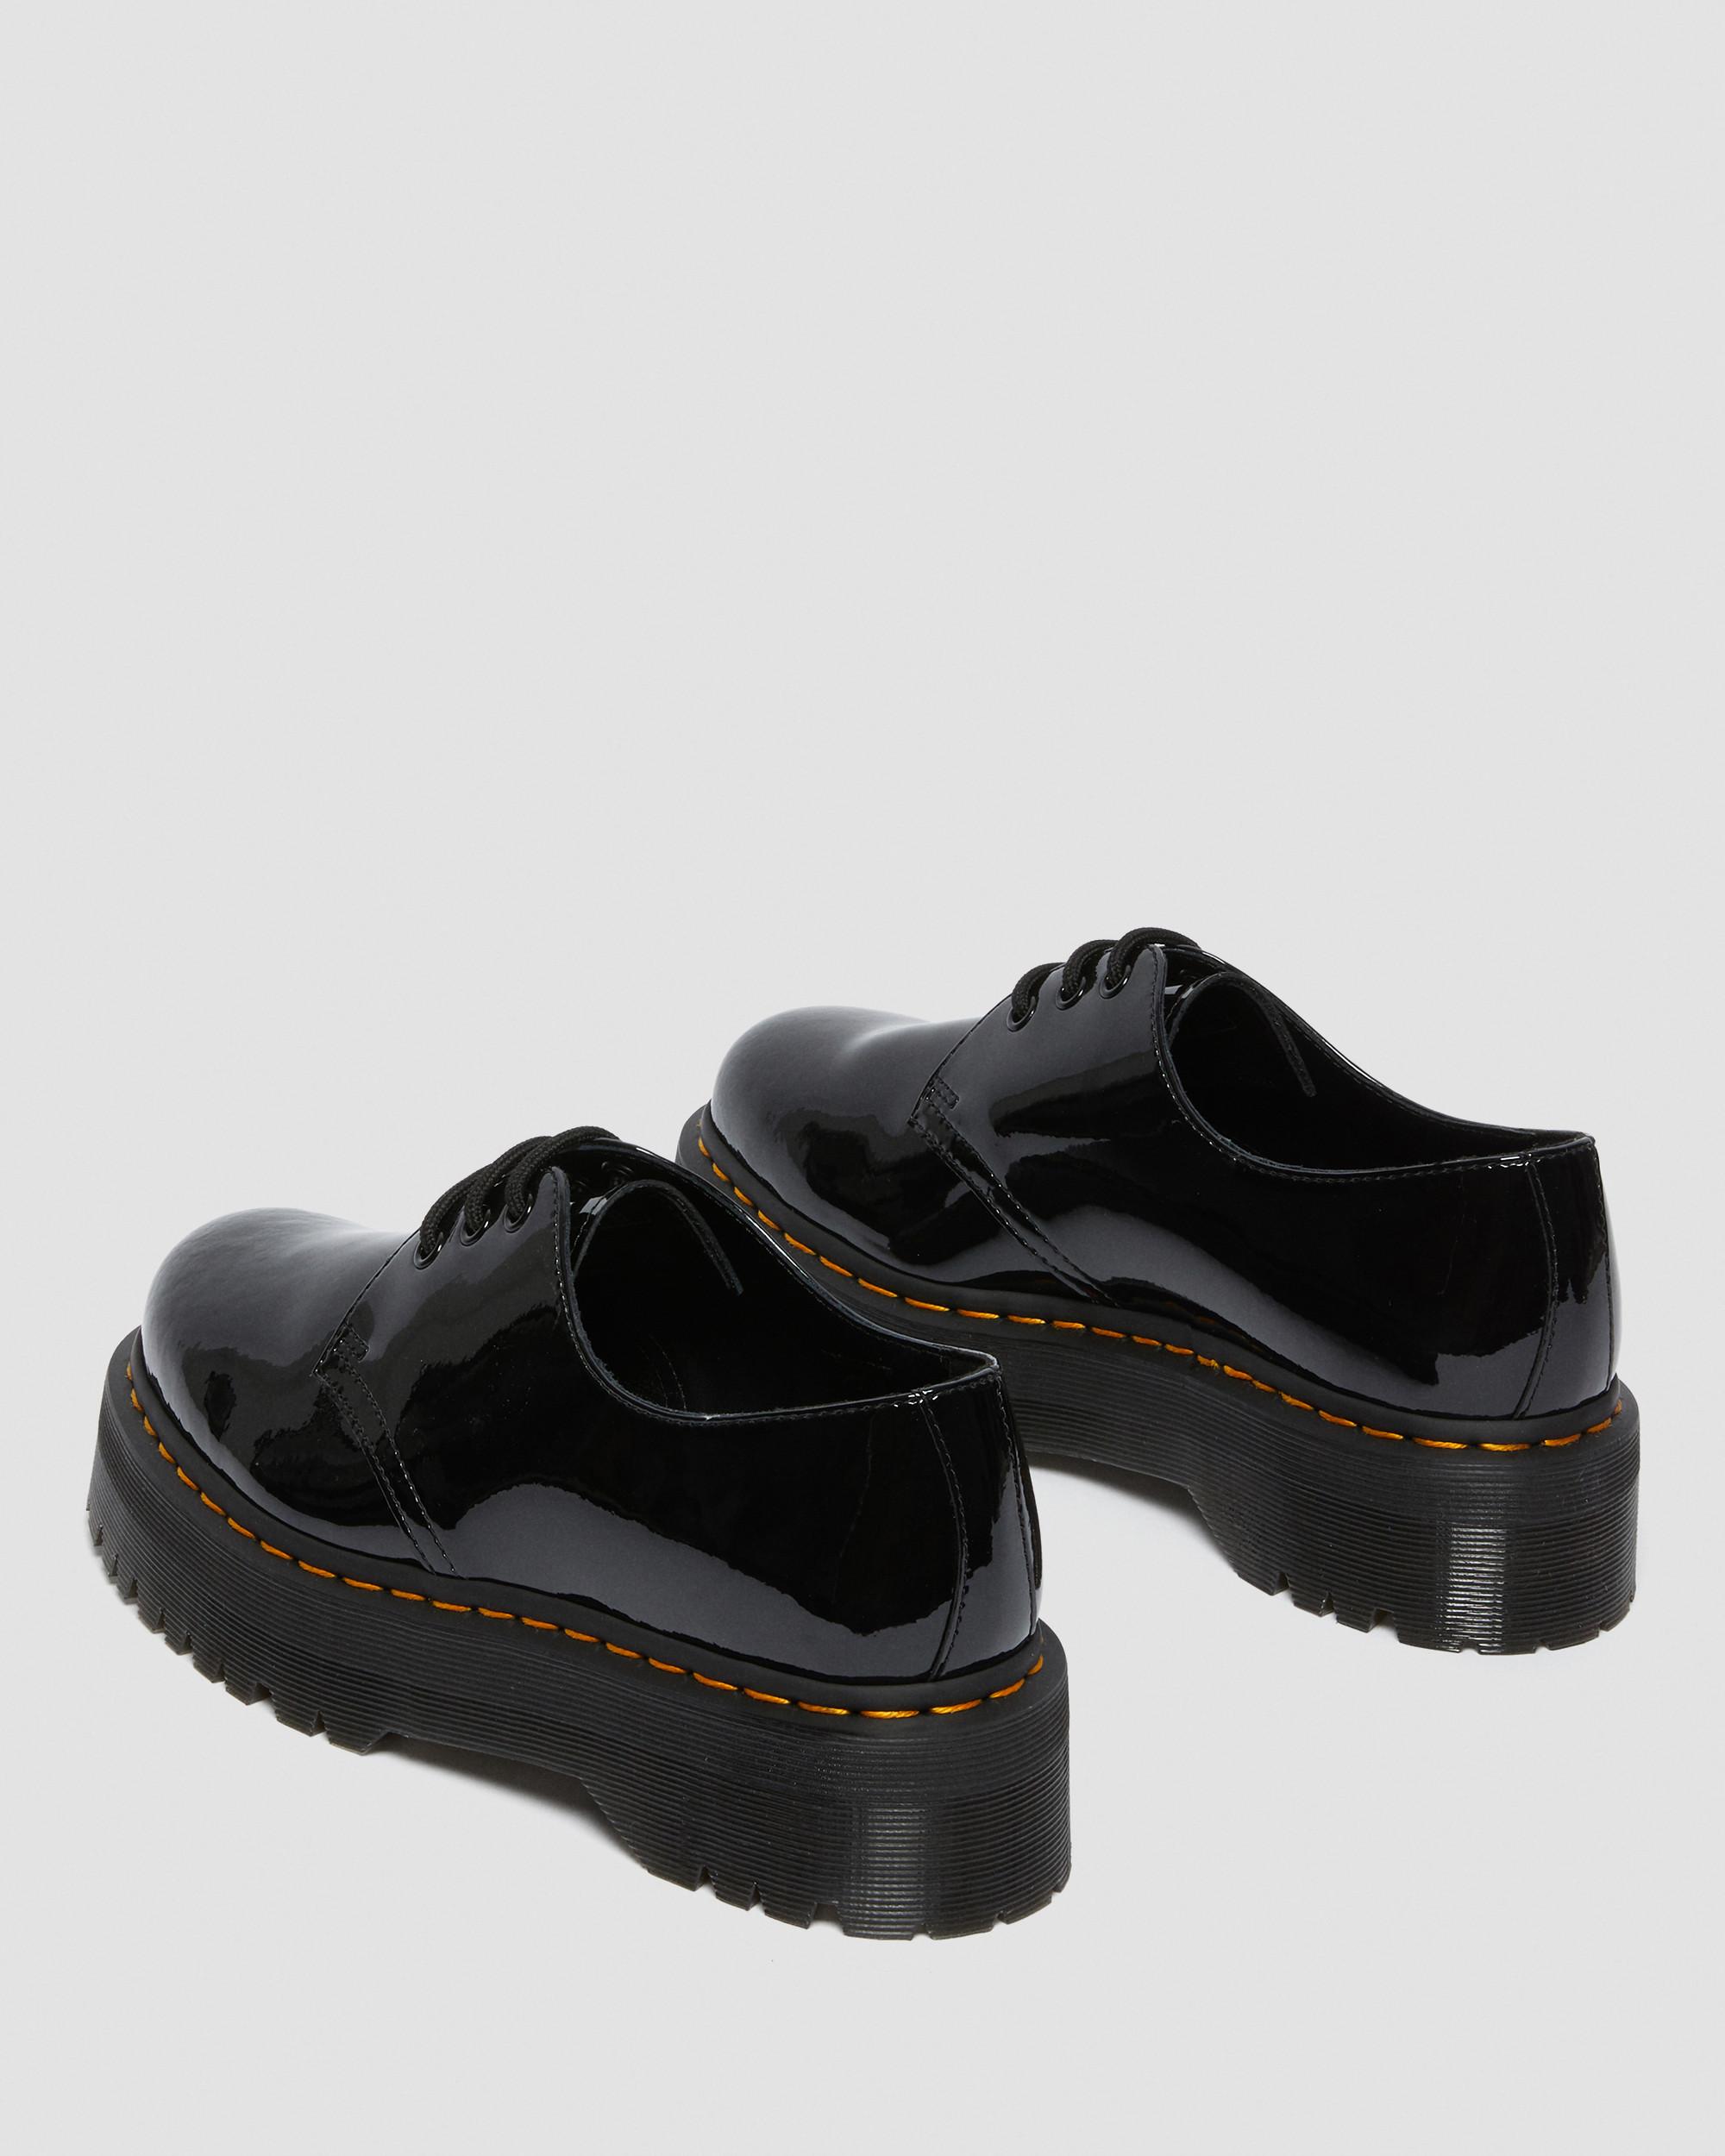 1461 Quad Patent Leather Platform Shoes1461 Quad Patent Leather Platform Shoes Dr. Martens